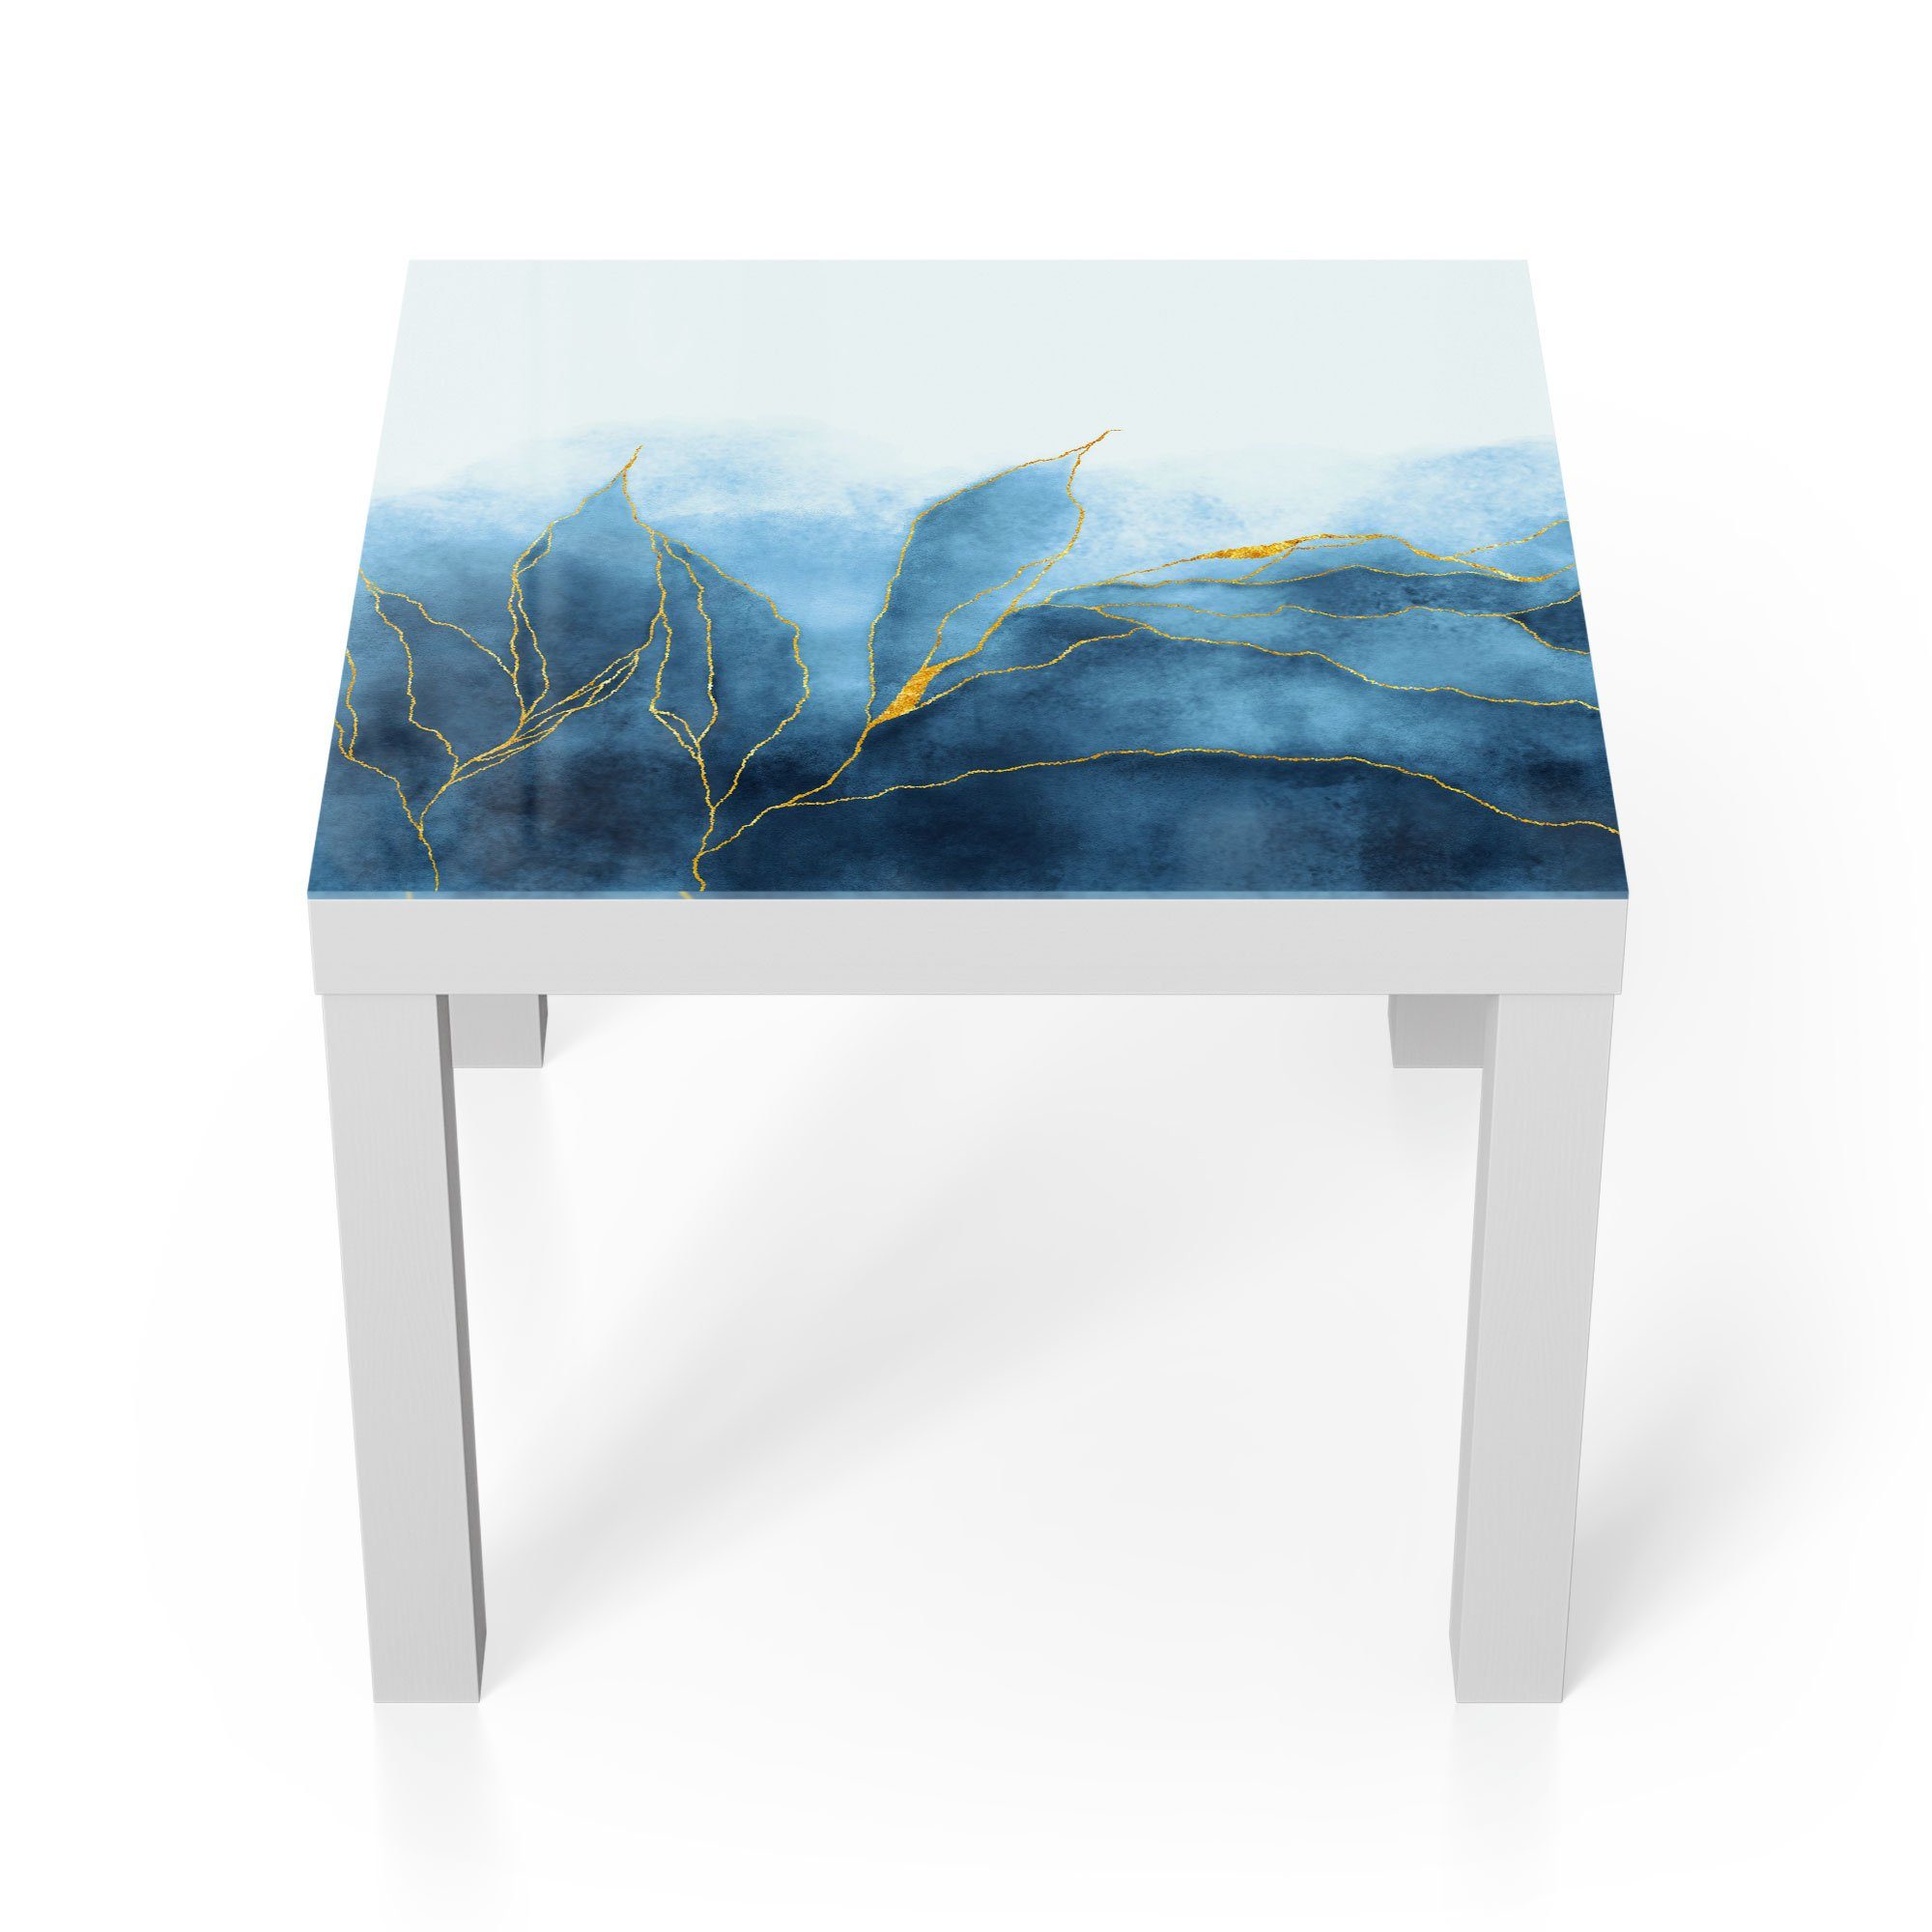 DEQORI Couchtisch 'Blauer Wasserfarbverlauf', Glas Beistelltisch Glastisch modern Weiß